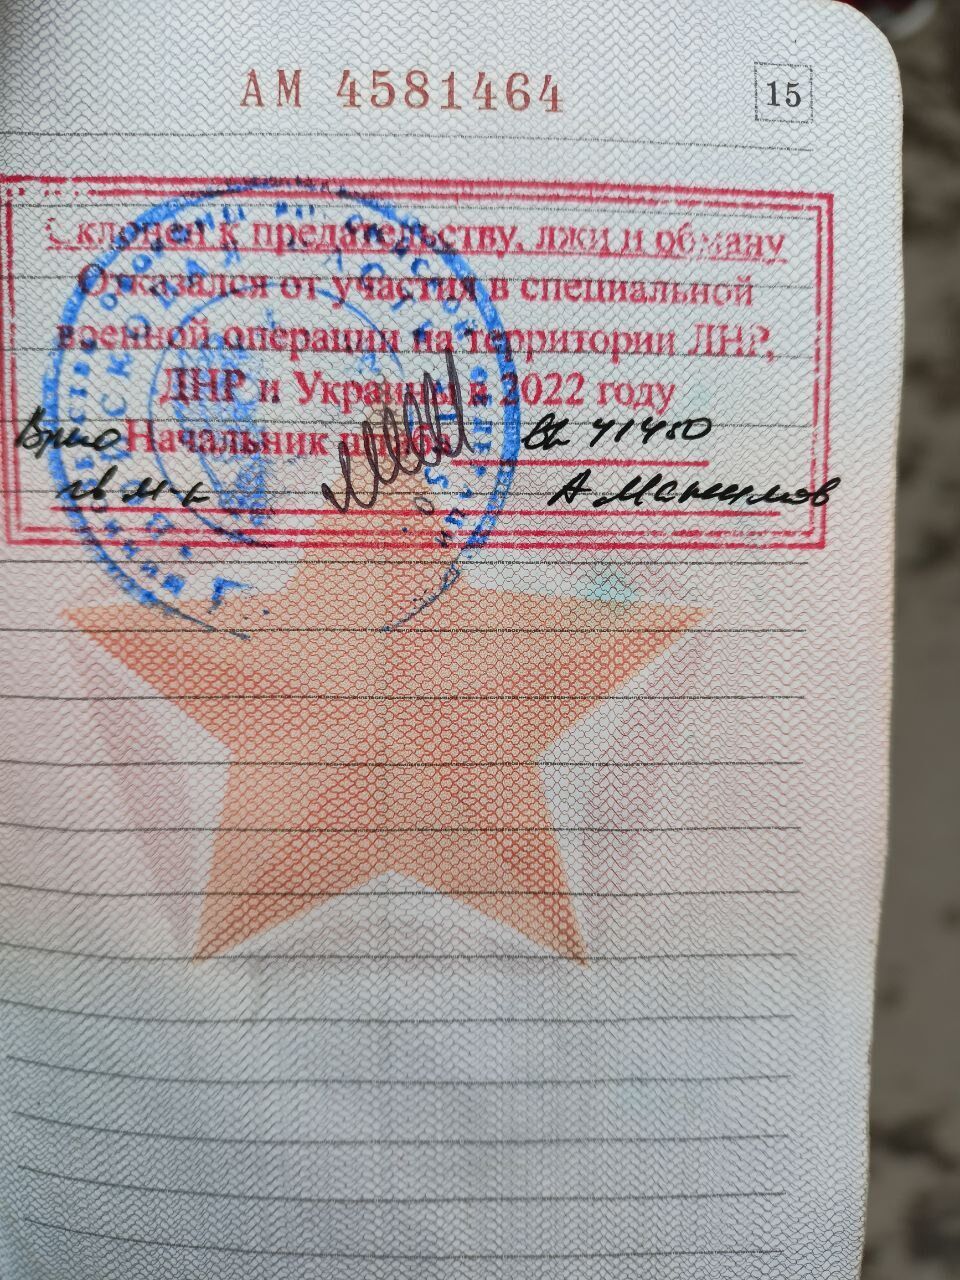 Штамп у військовому квитку рядового армії РФ, який він вважає незаконним